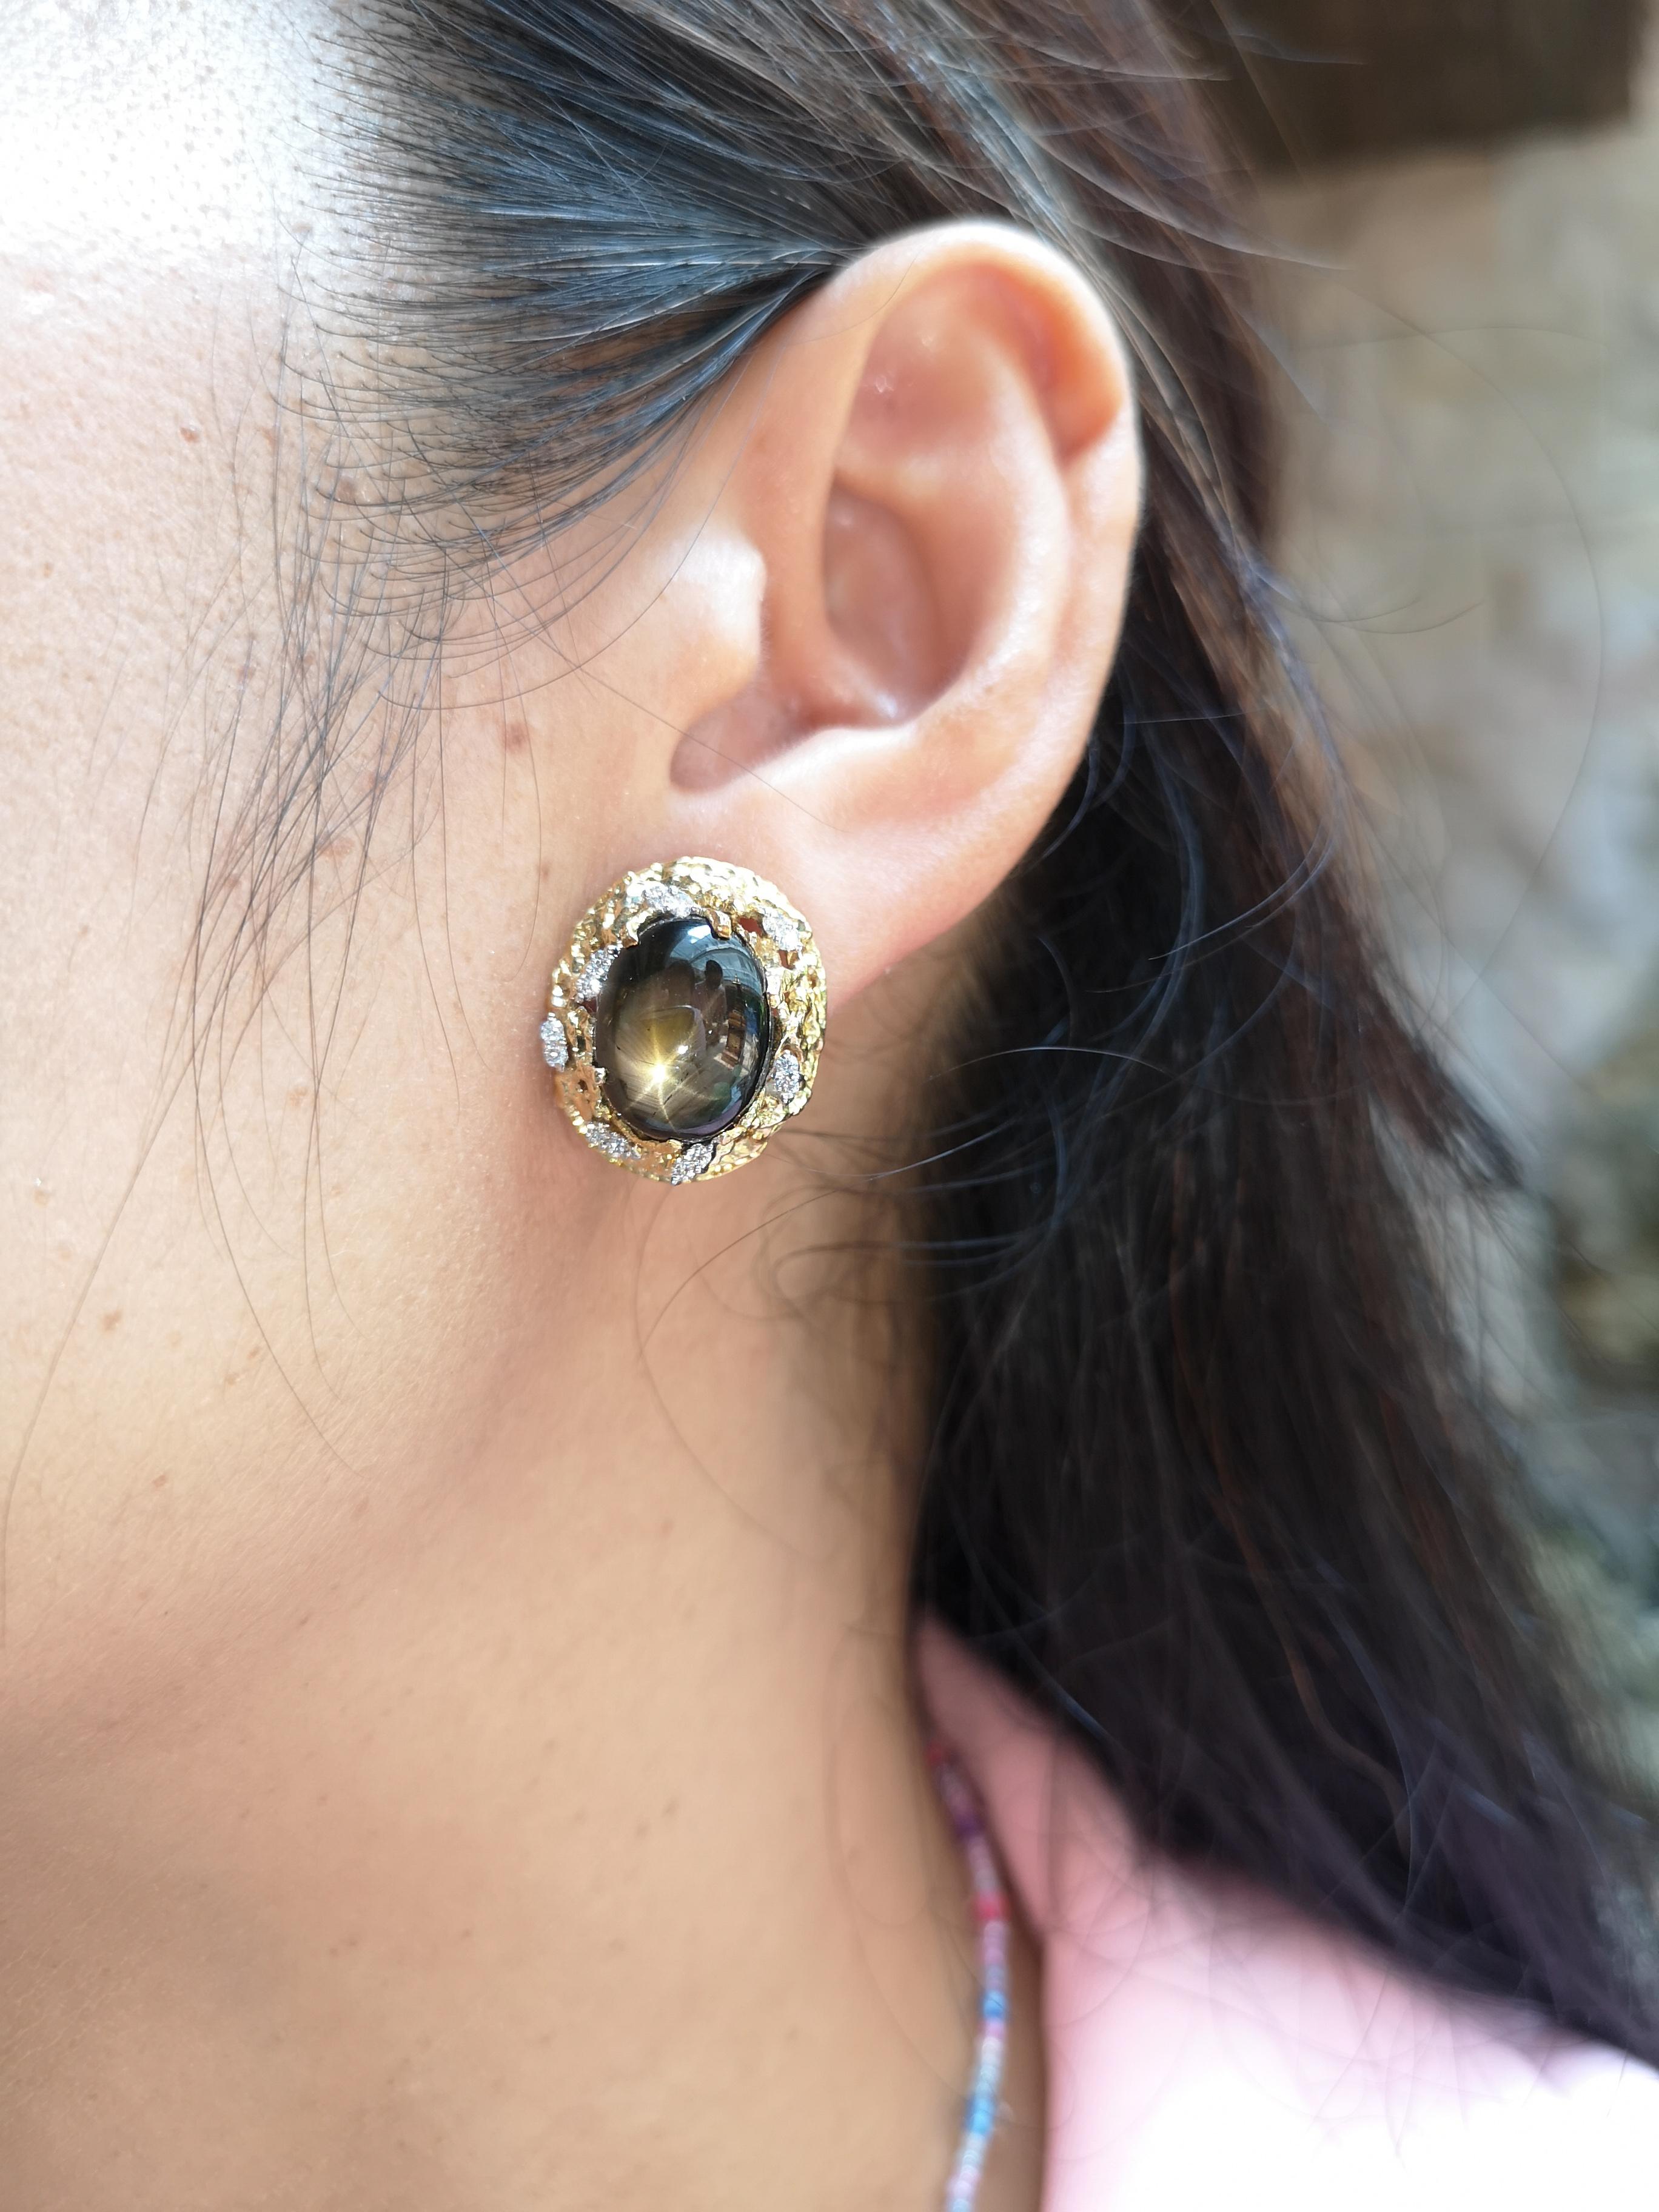 Boucles d'oreilles en or 18 carats : saphir étoilé 16,76 carats et diamant 0,31 carat

Largeur : 1.6 cm
Longueur : 1.9 cm 

